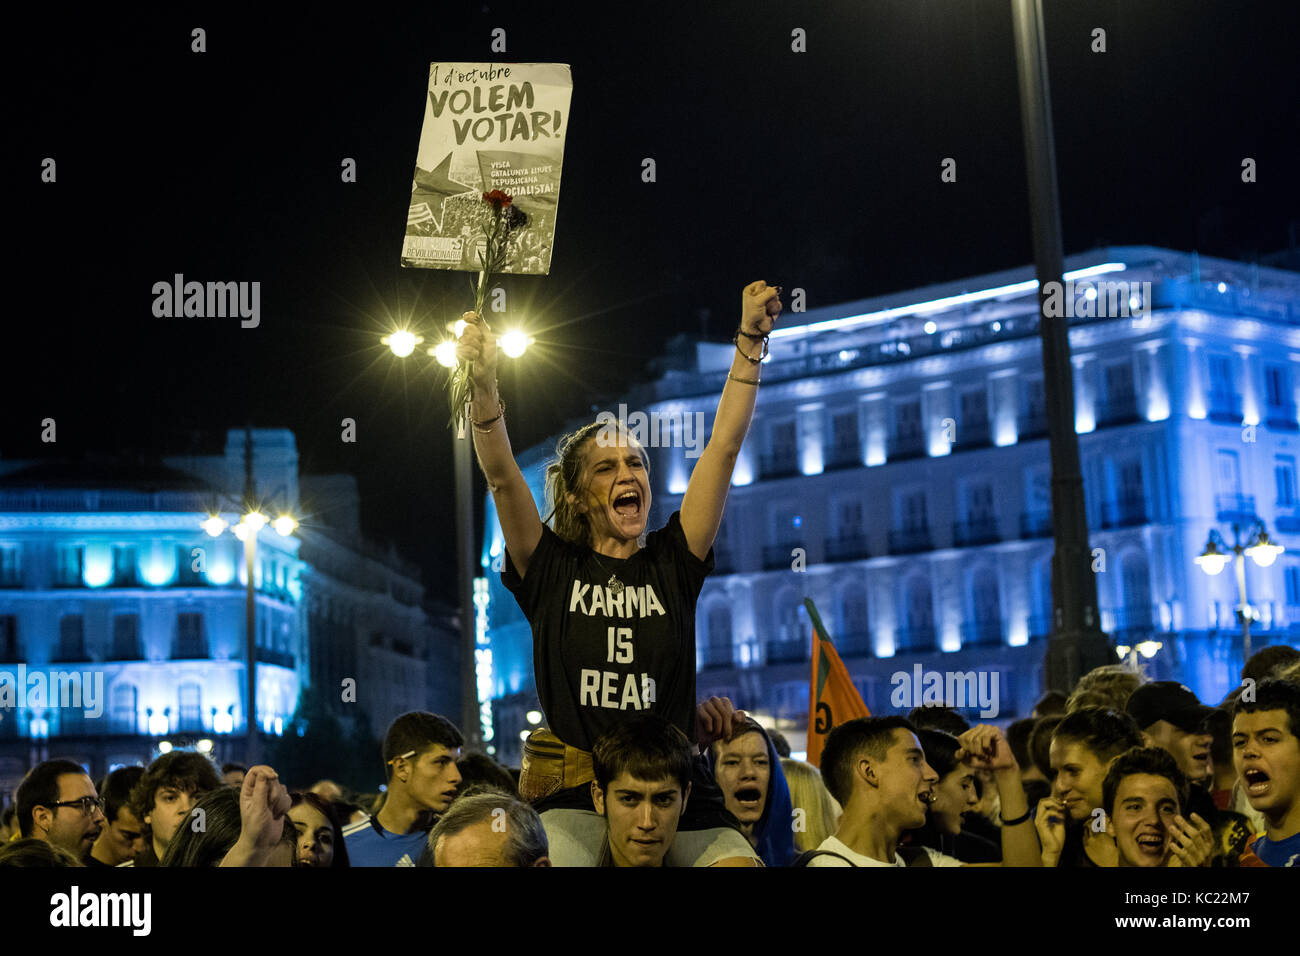 Madrid, España. 1 de octubre de 2017. Una mujer sostiene un cartel que dice "queremos votar" durante una protesta que apoya el referéndum en Cataluña. Madrid, España. Crédito: Marcos del Mazo/Alamy Live News Foto de stock